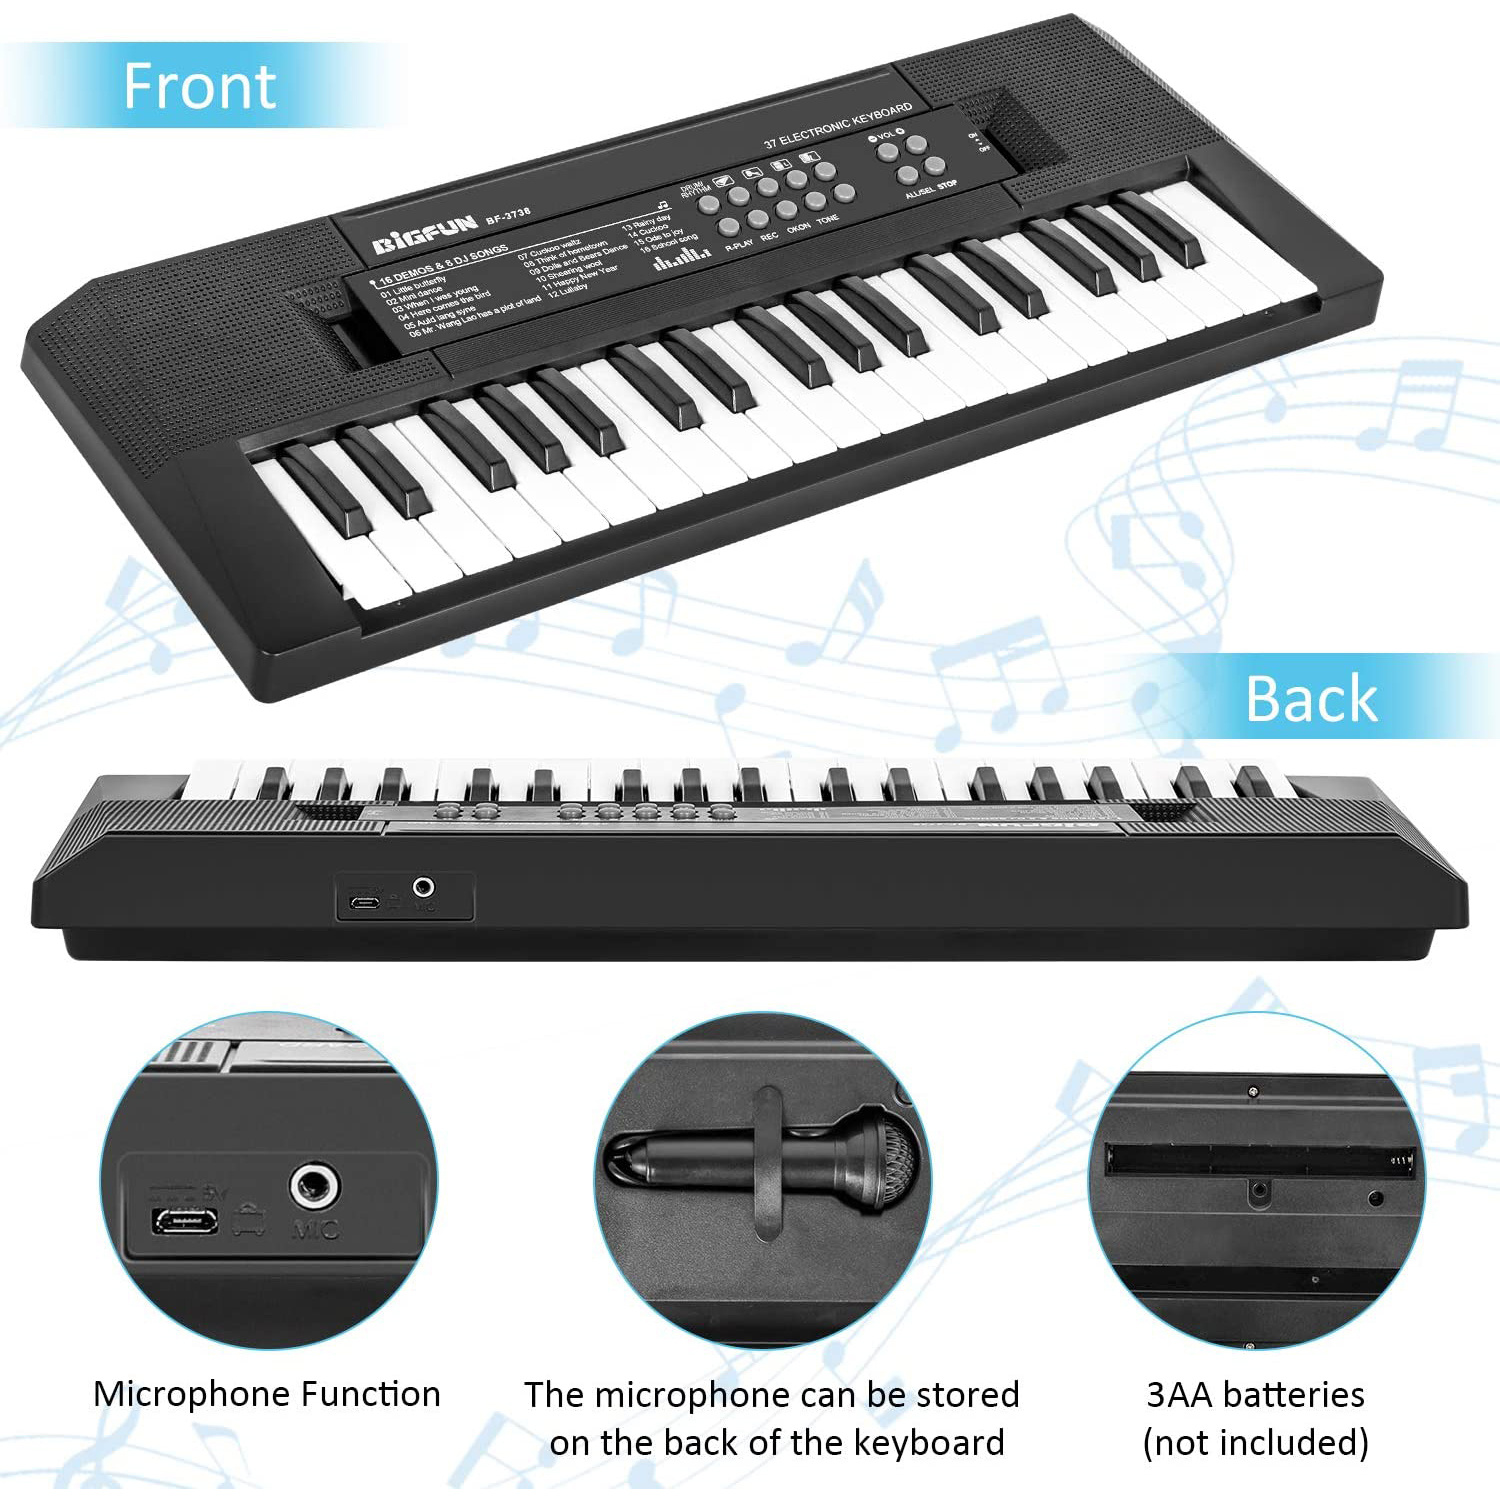 Piano électronique avec micro pour enfant • Enfant World